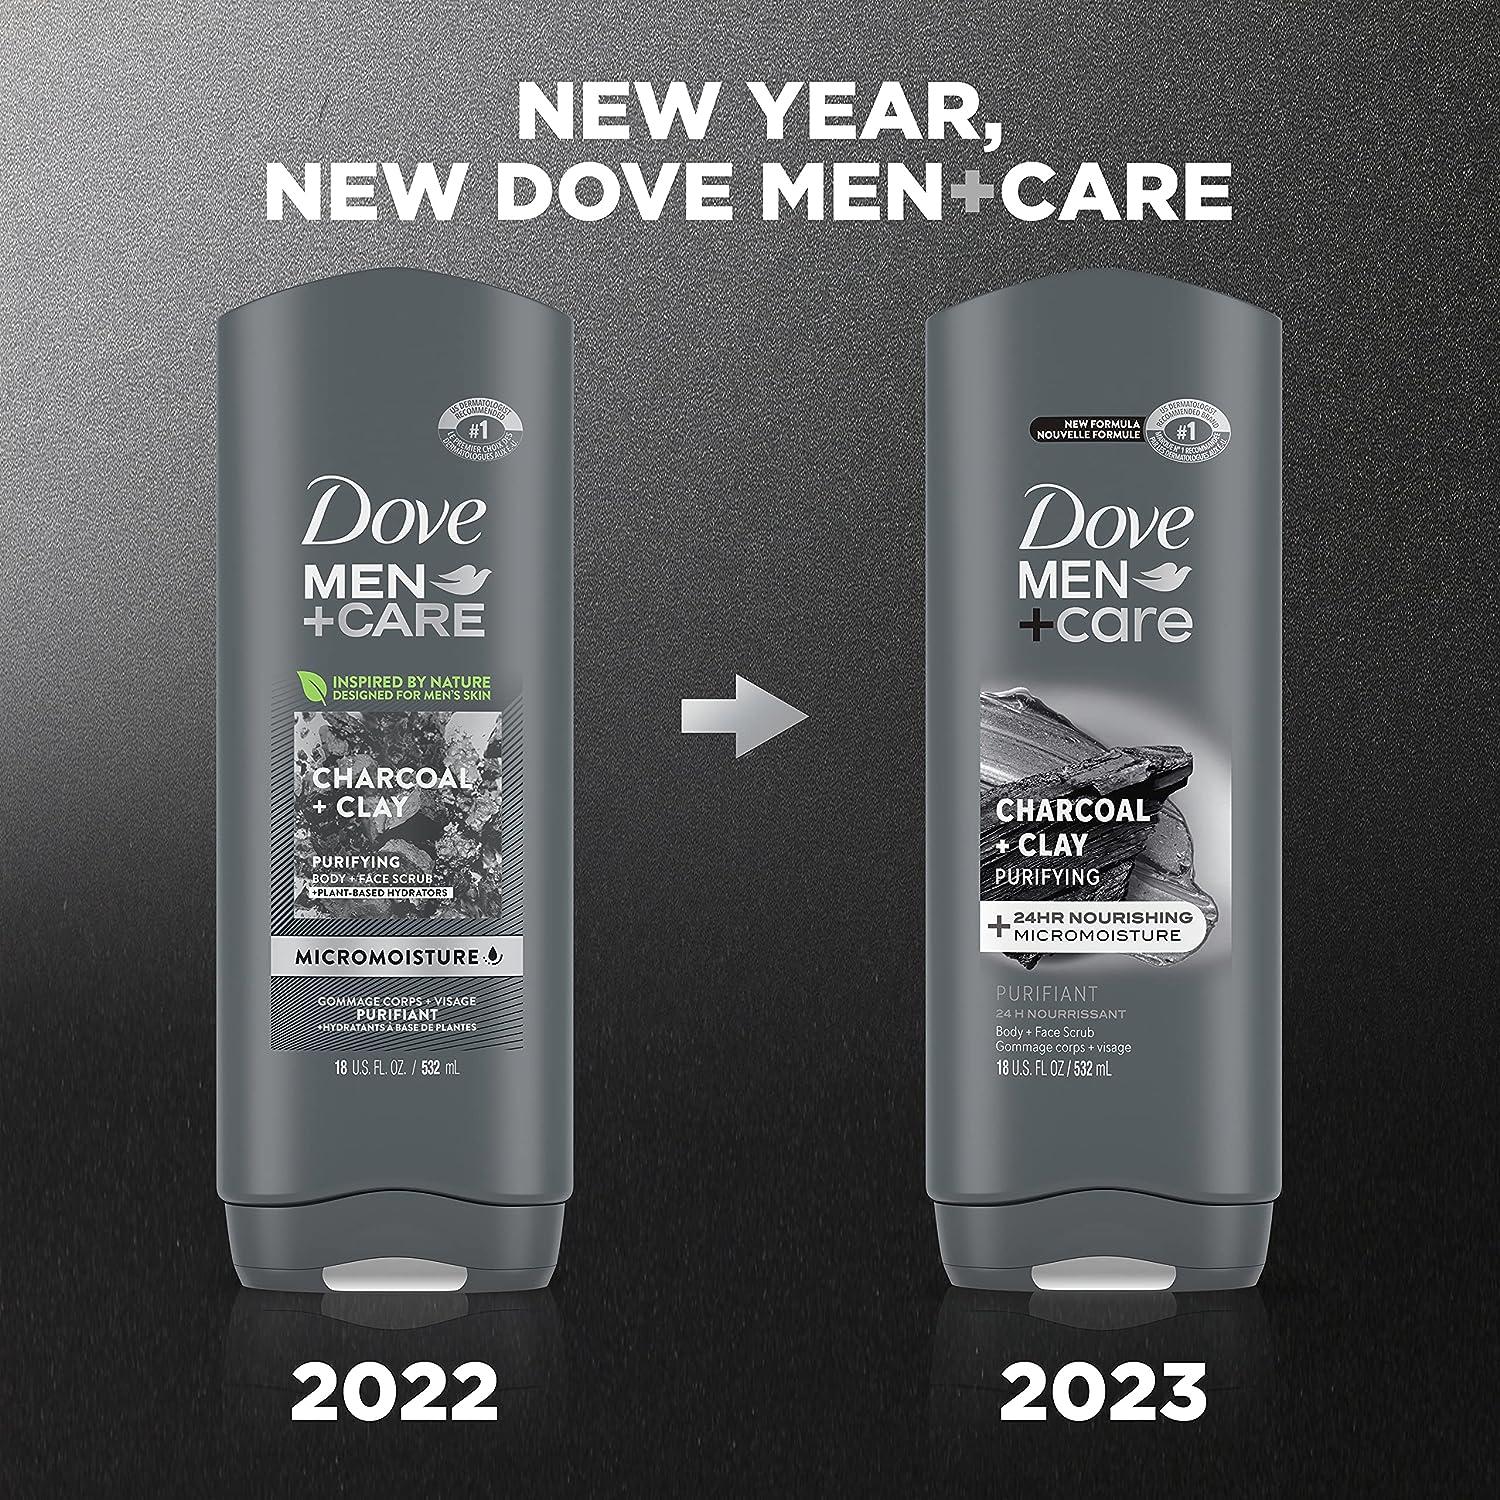 Dove Men+Care Body and Face Bar, Extra Fresh, 2.6 oz.